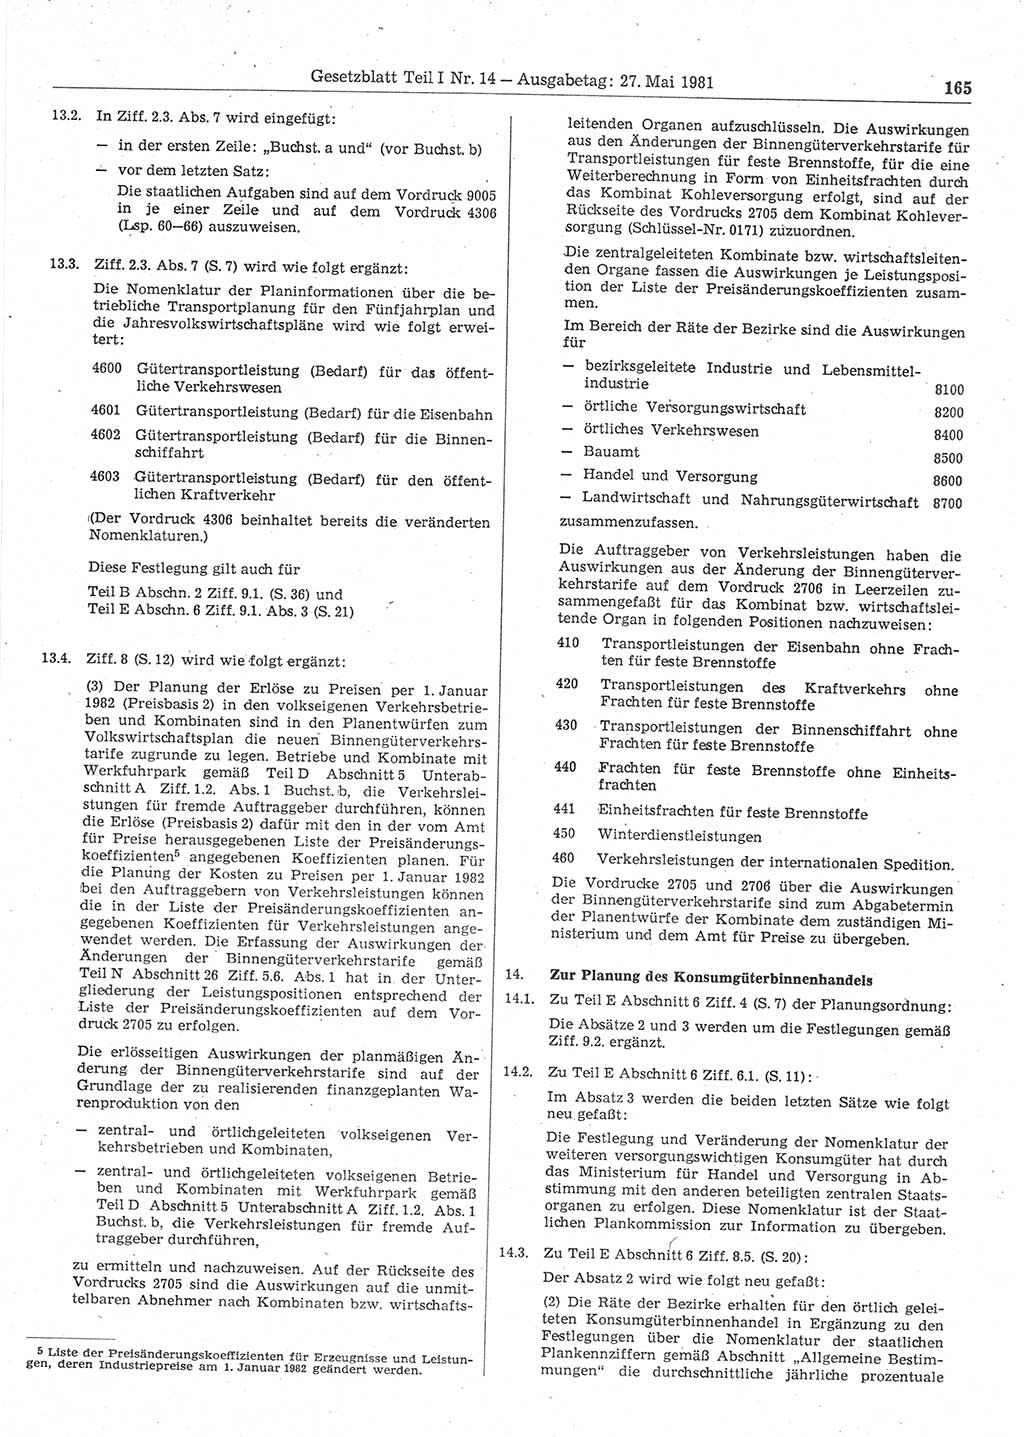 Gesetzblatt (GBl.) der Deutschen Demokratischen Republik (DDR) Teil Ⅰ 1981, Seite 165 (GBl. DDR Ⅰ 1981, S. 165)